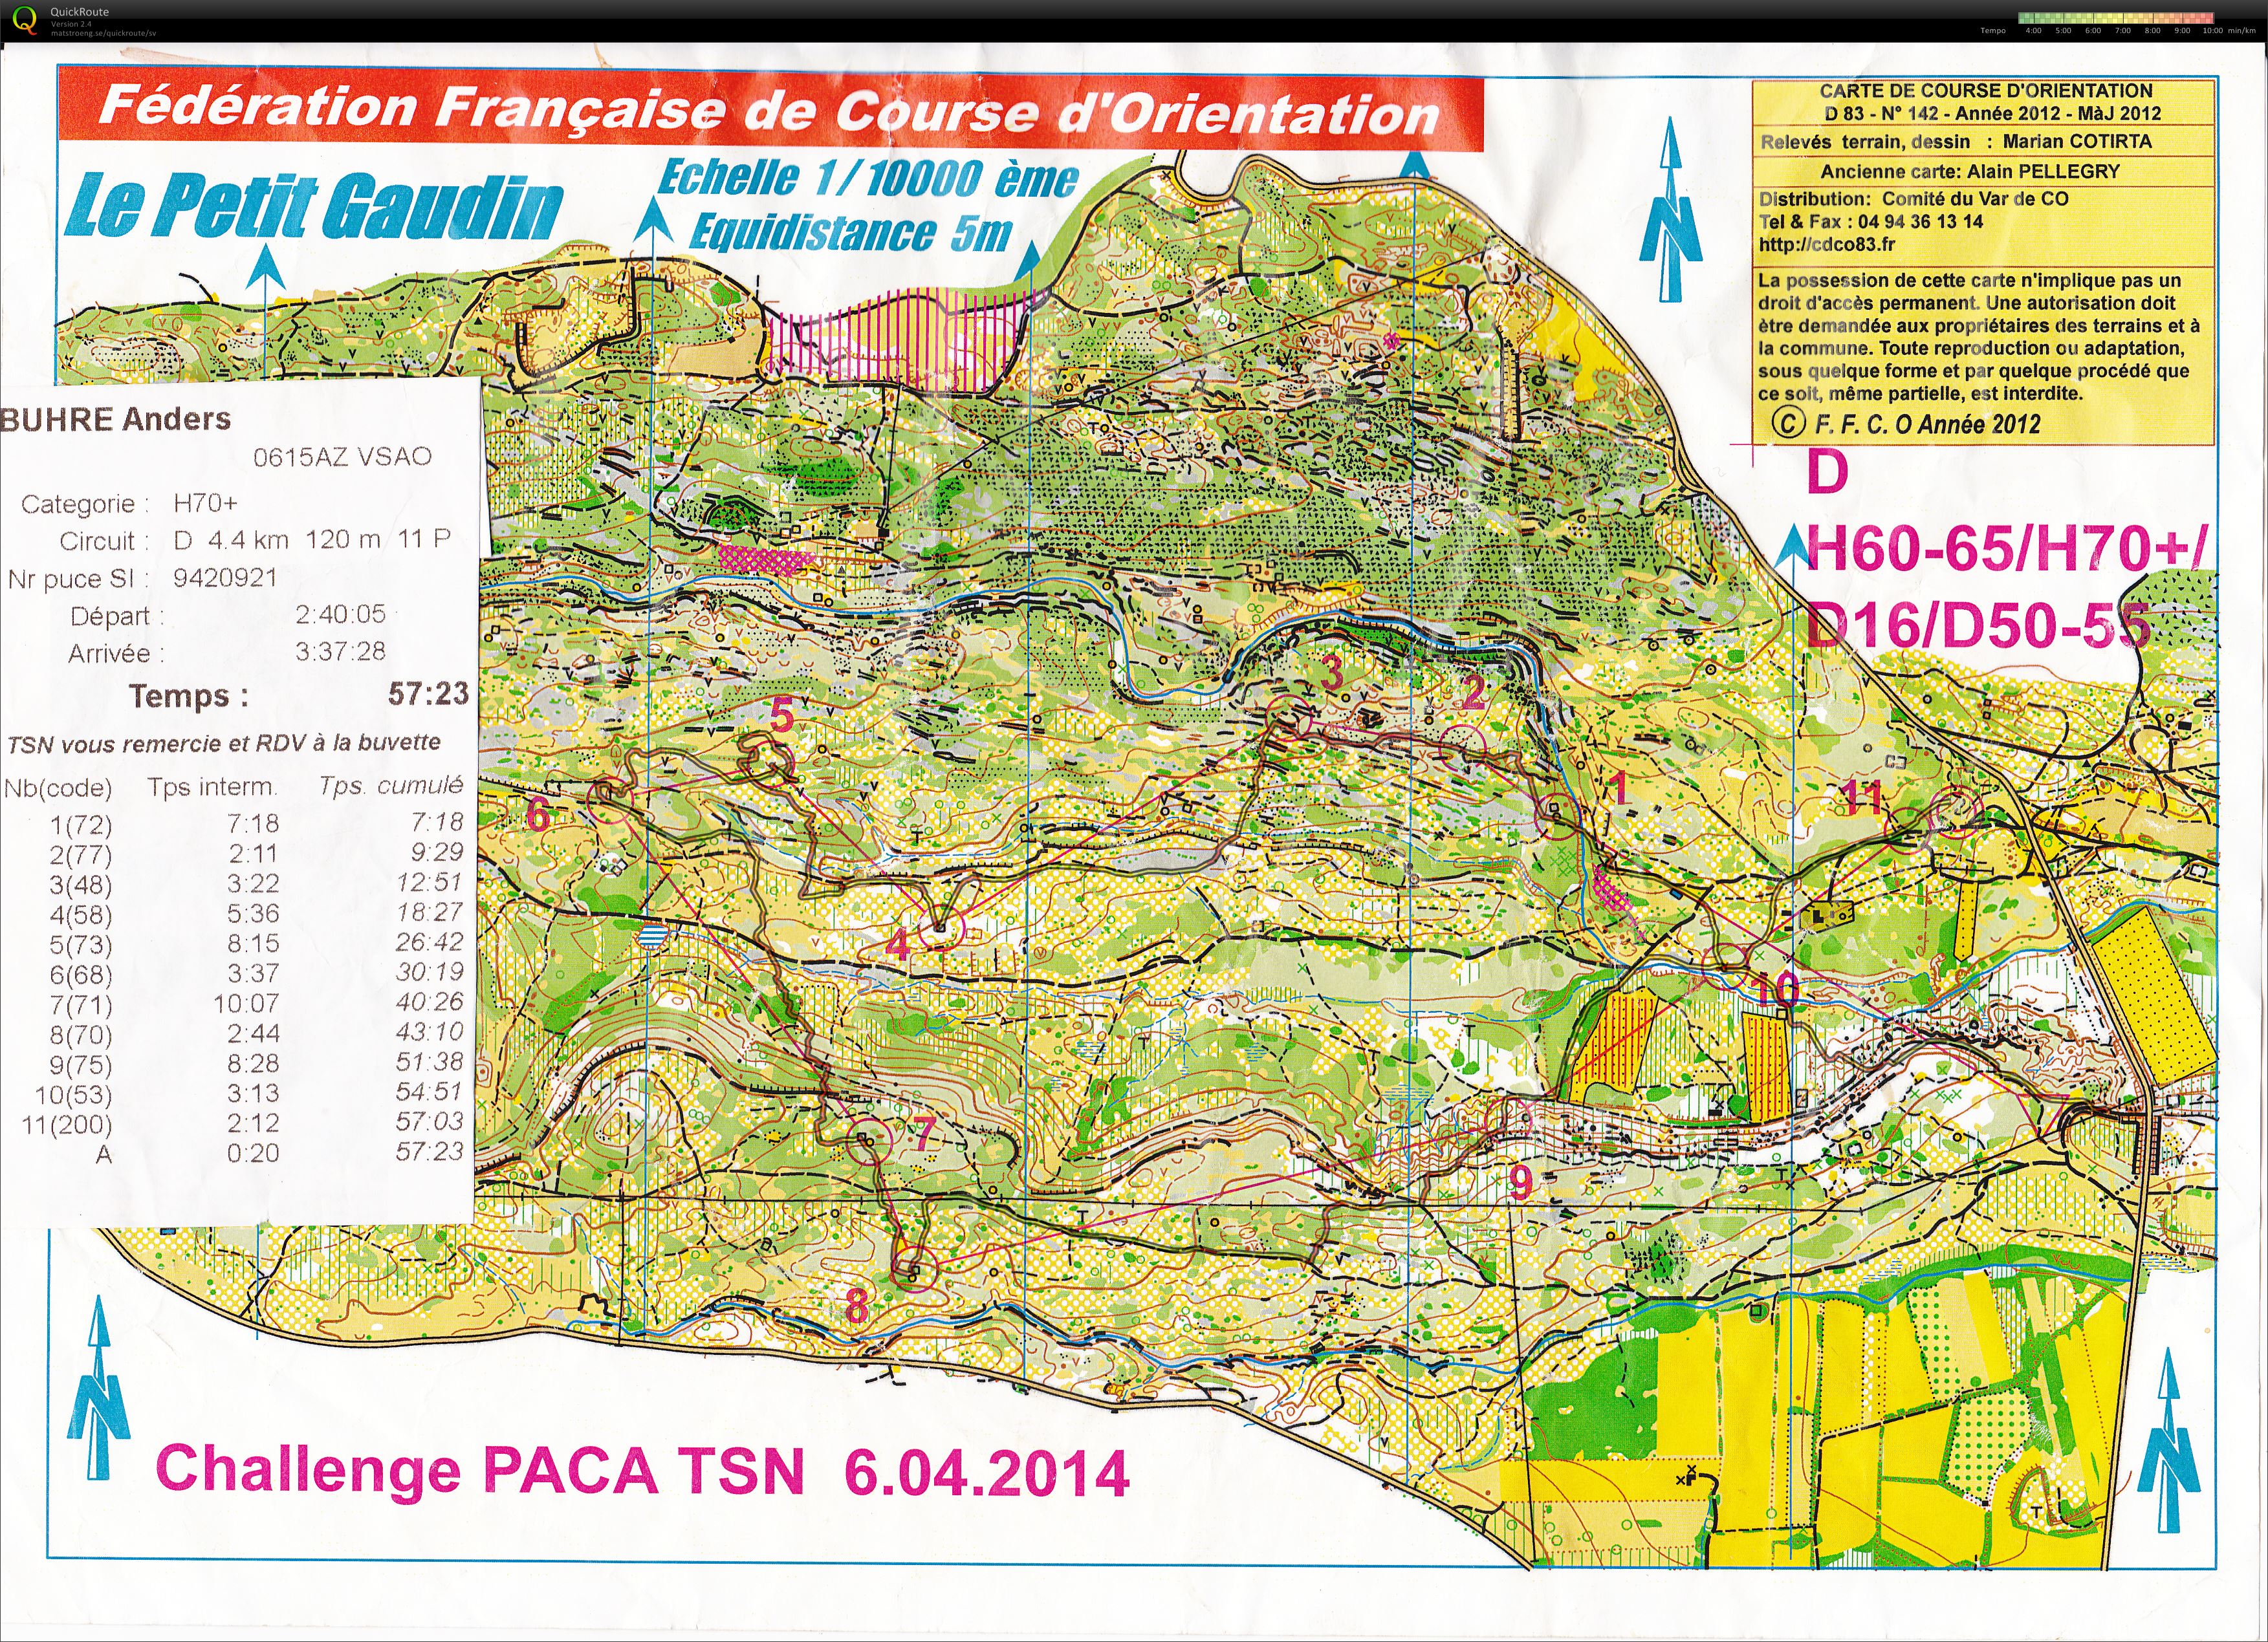 Challenge Paca (06.04.2014)